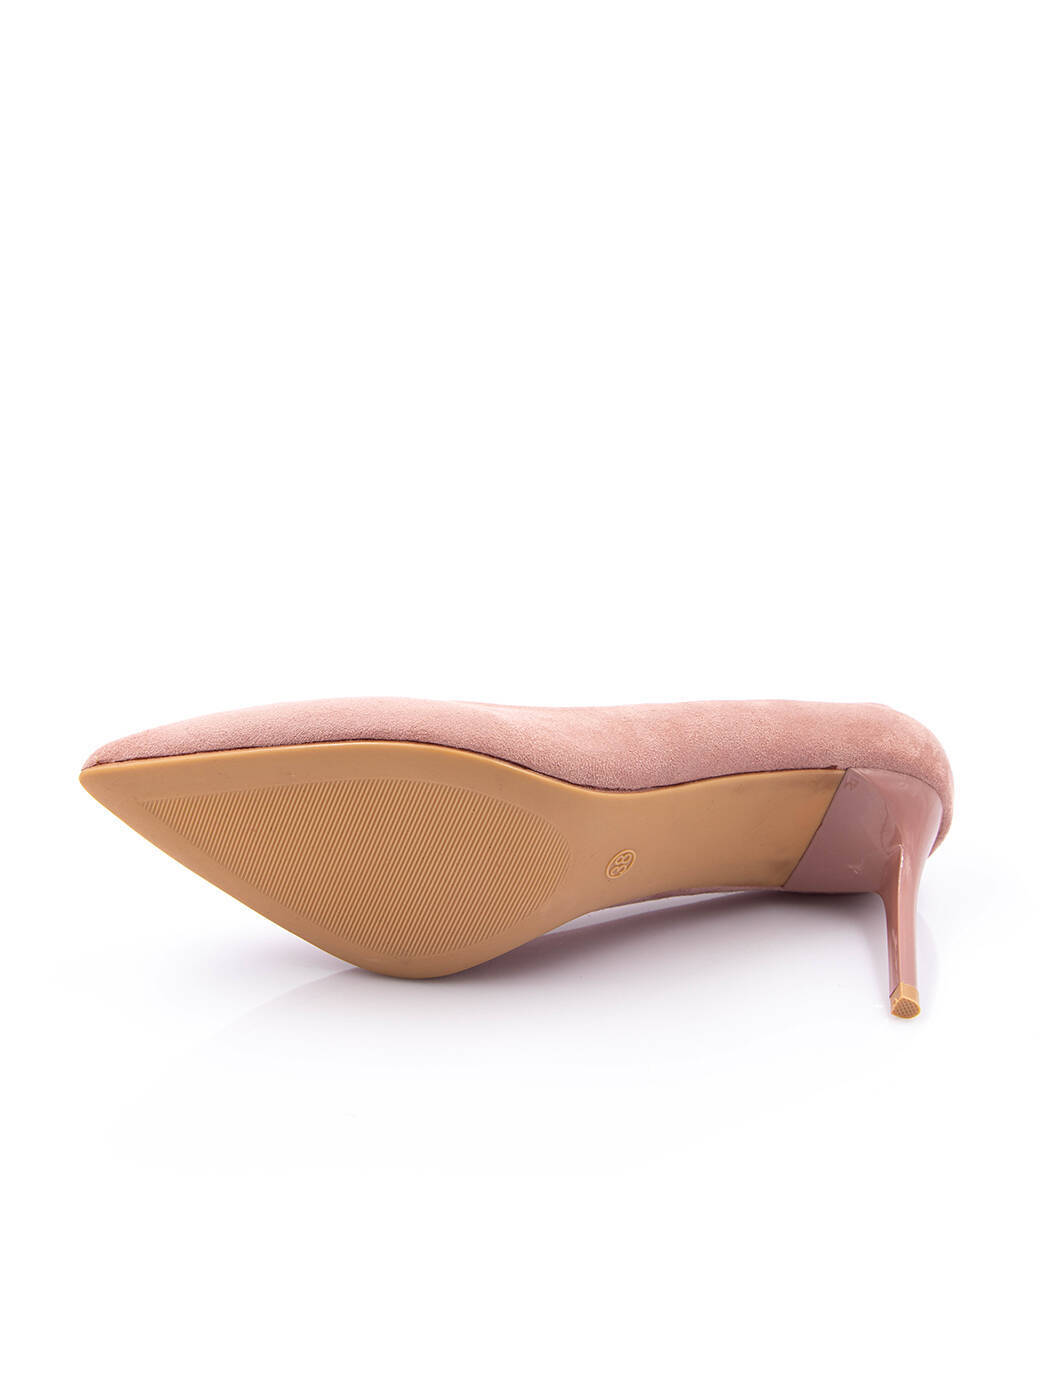 Туфли женские розовые экозамша каблук шпилька демисезон от производителя BM вид 2